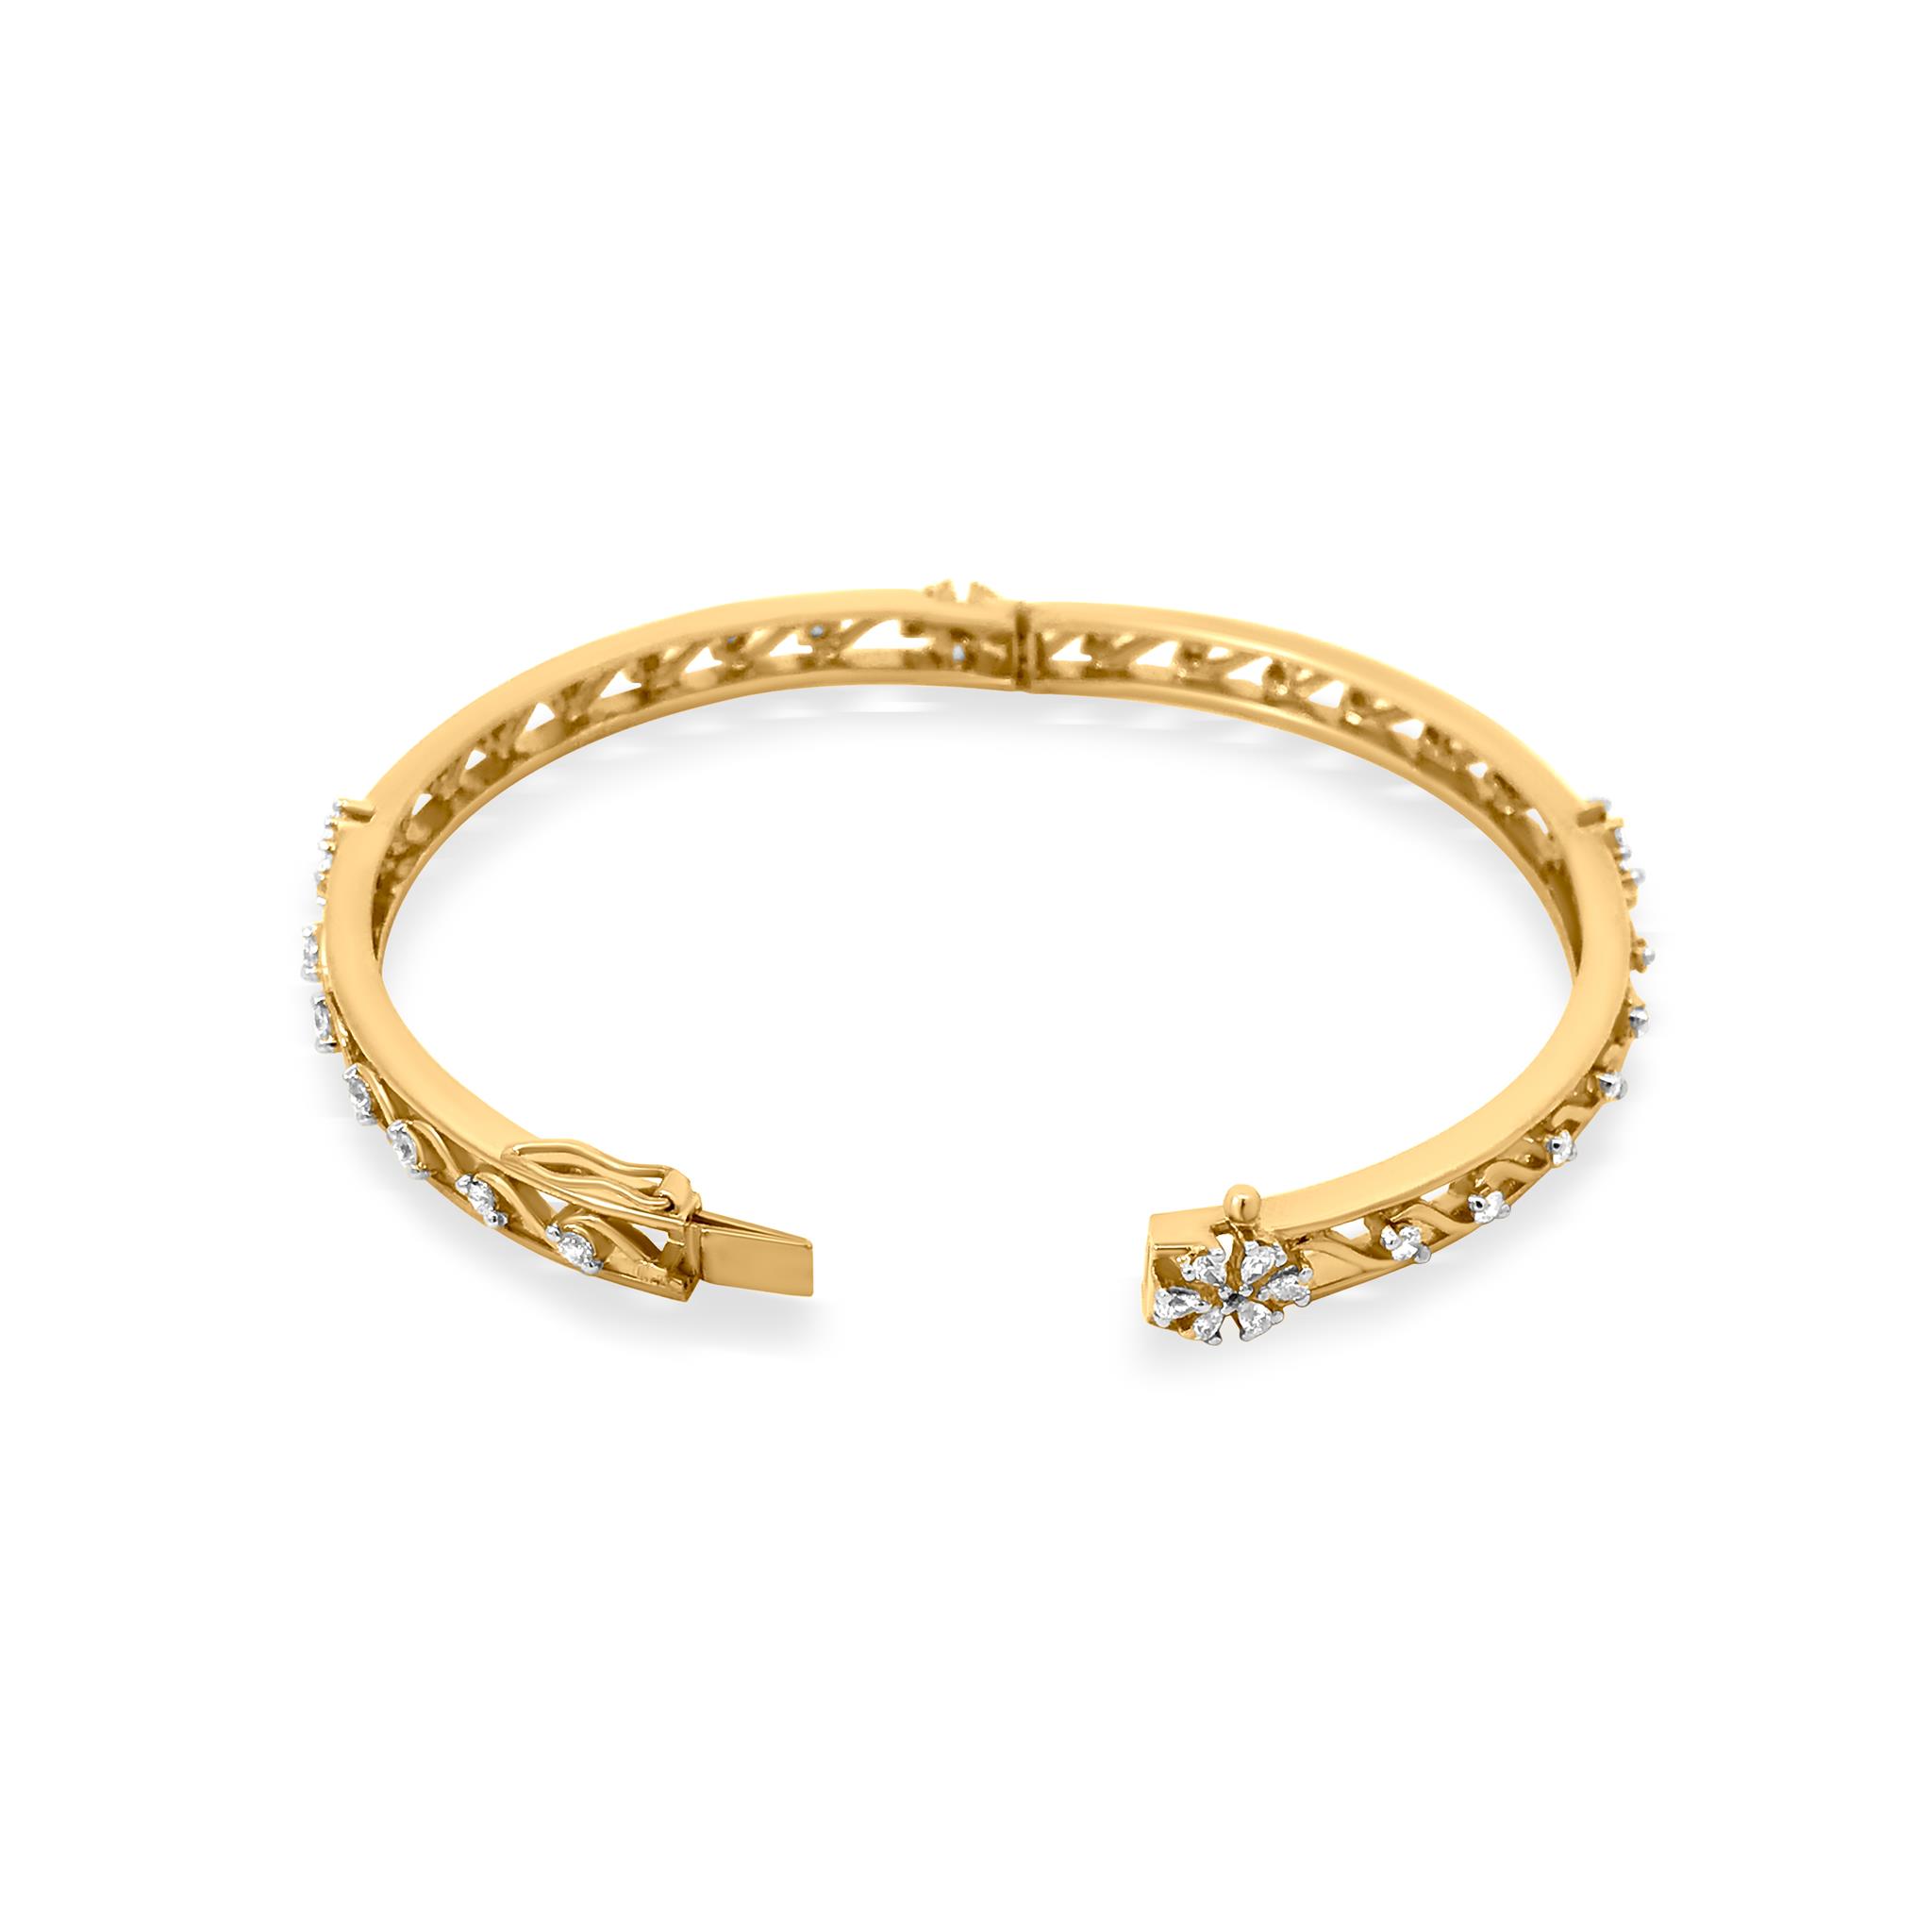 Bracelets for women | Women's Jewelry store in Lagos | Sojoee.com